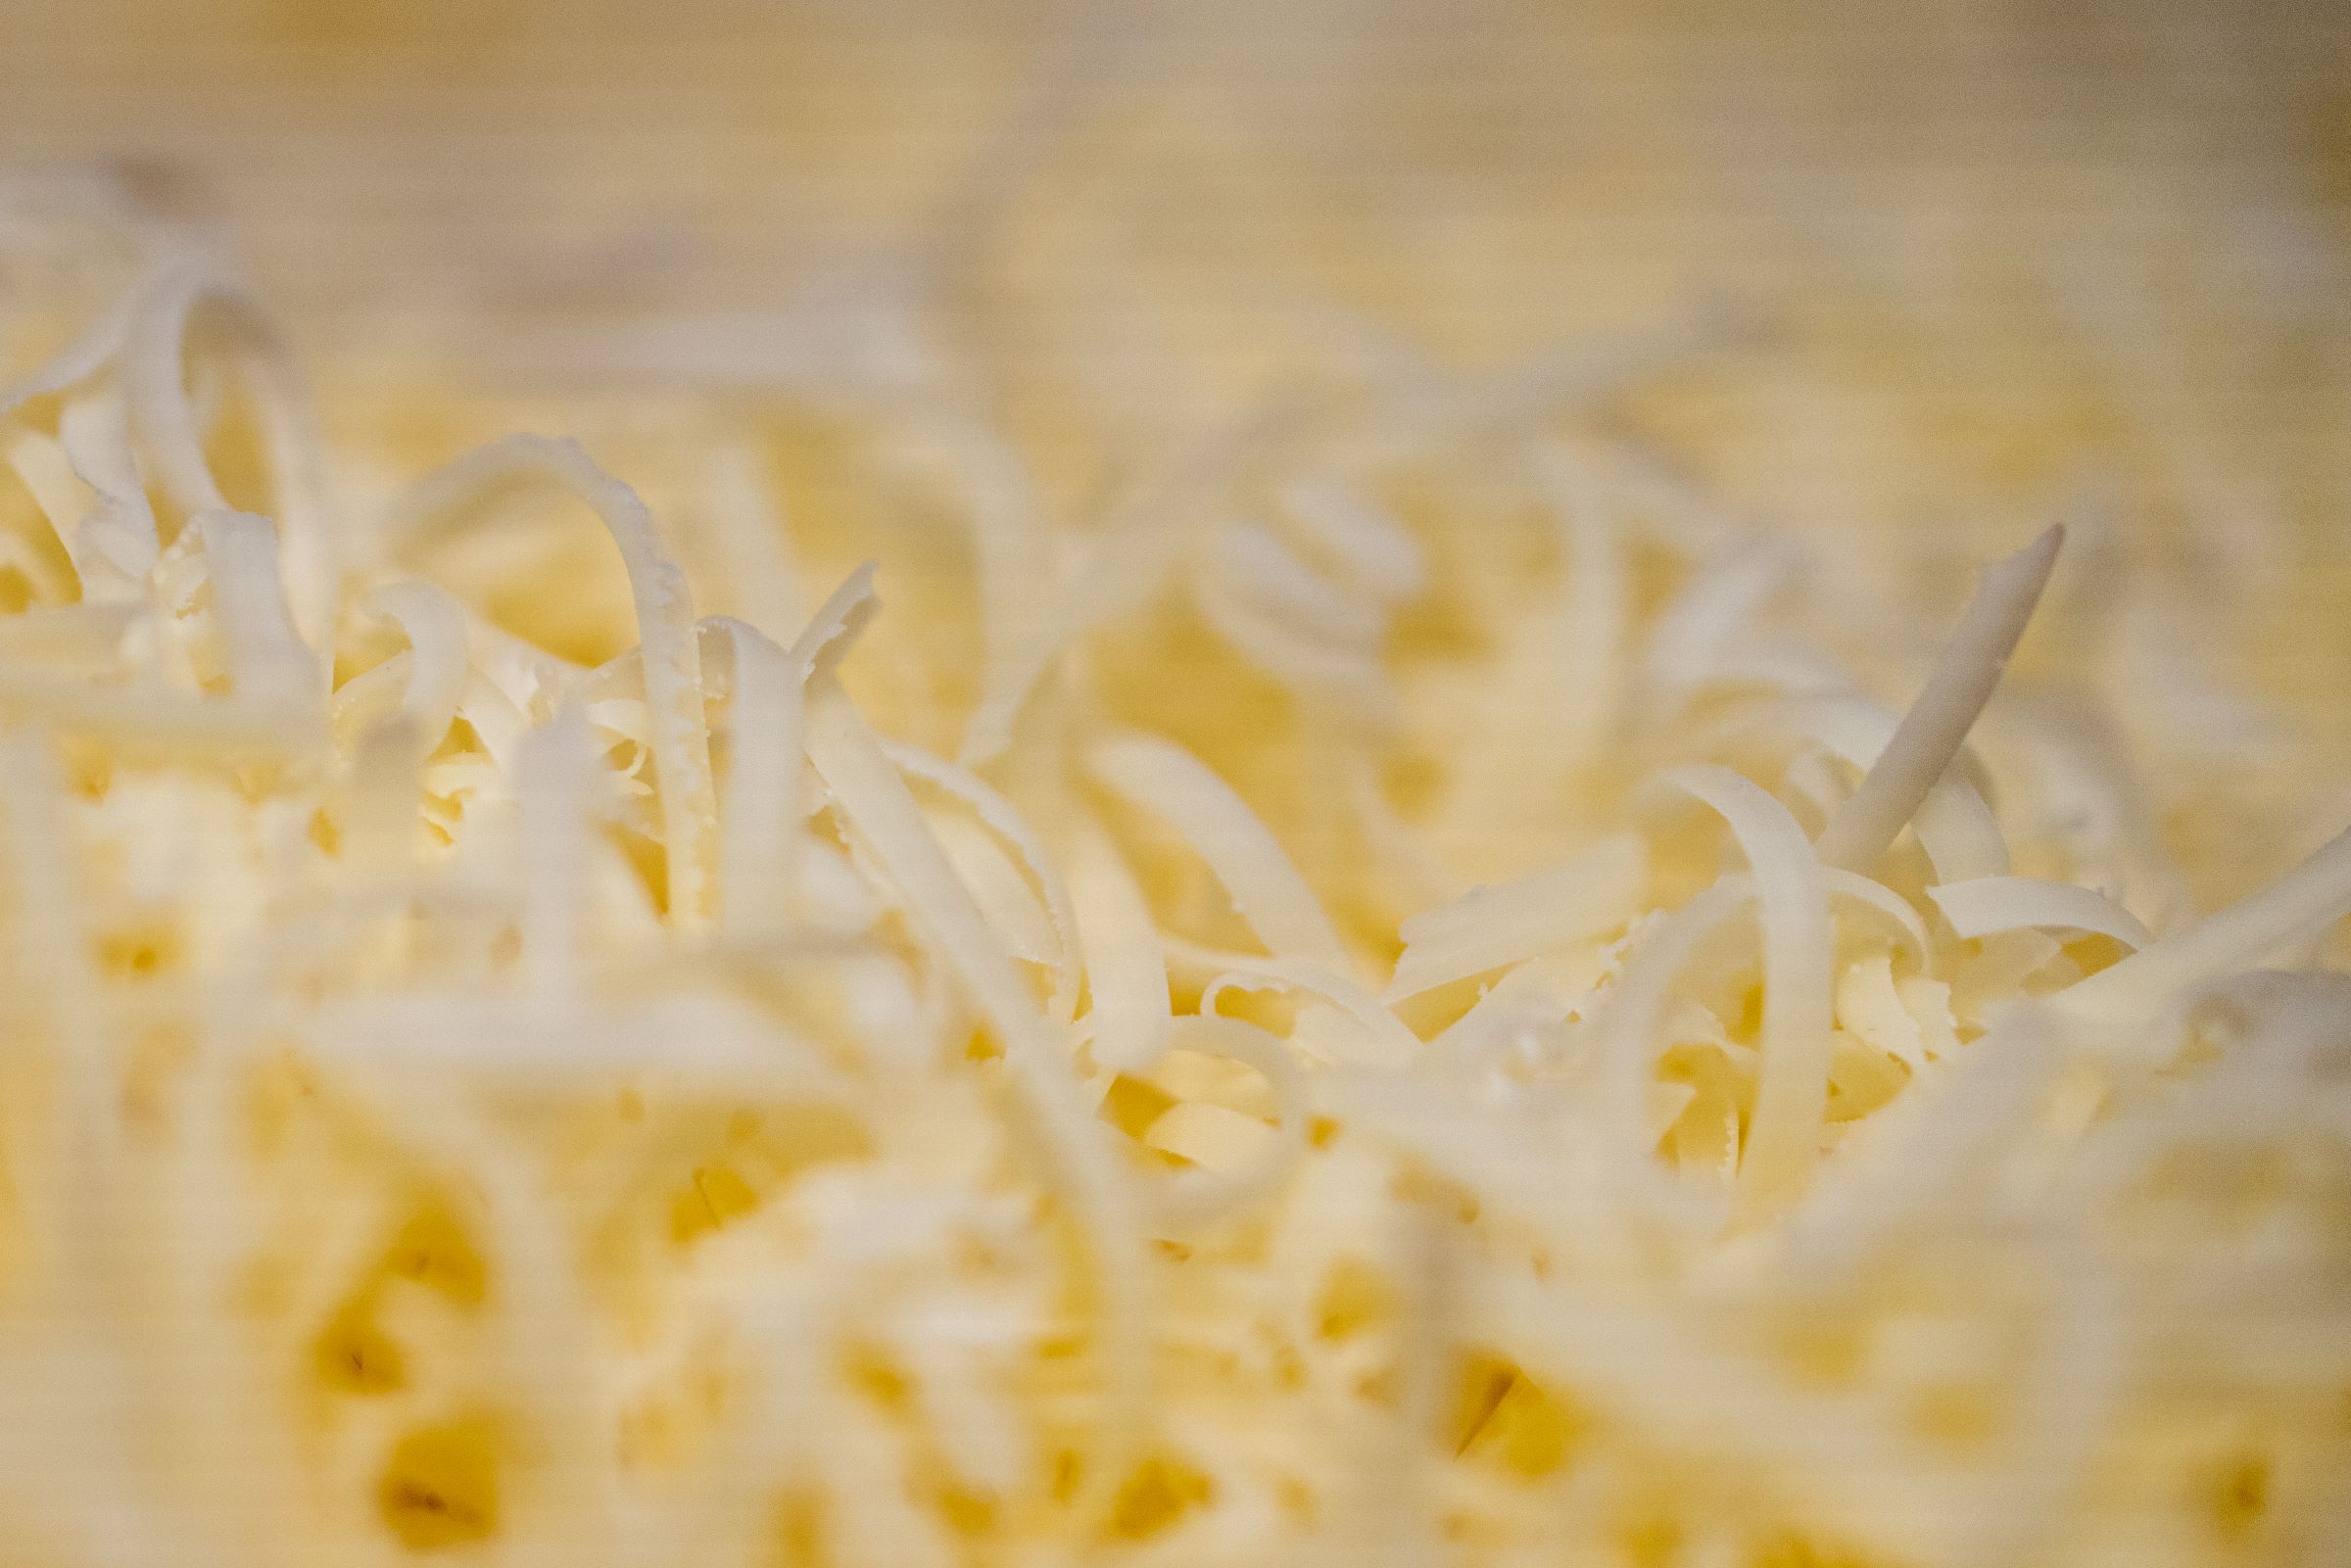 Découpage du fromage en dés